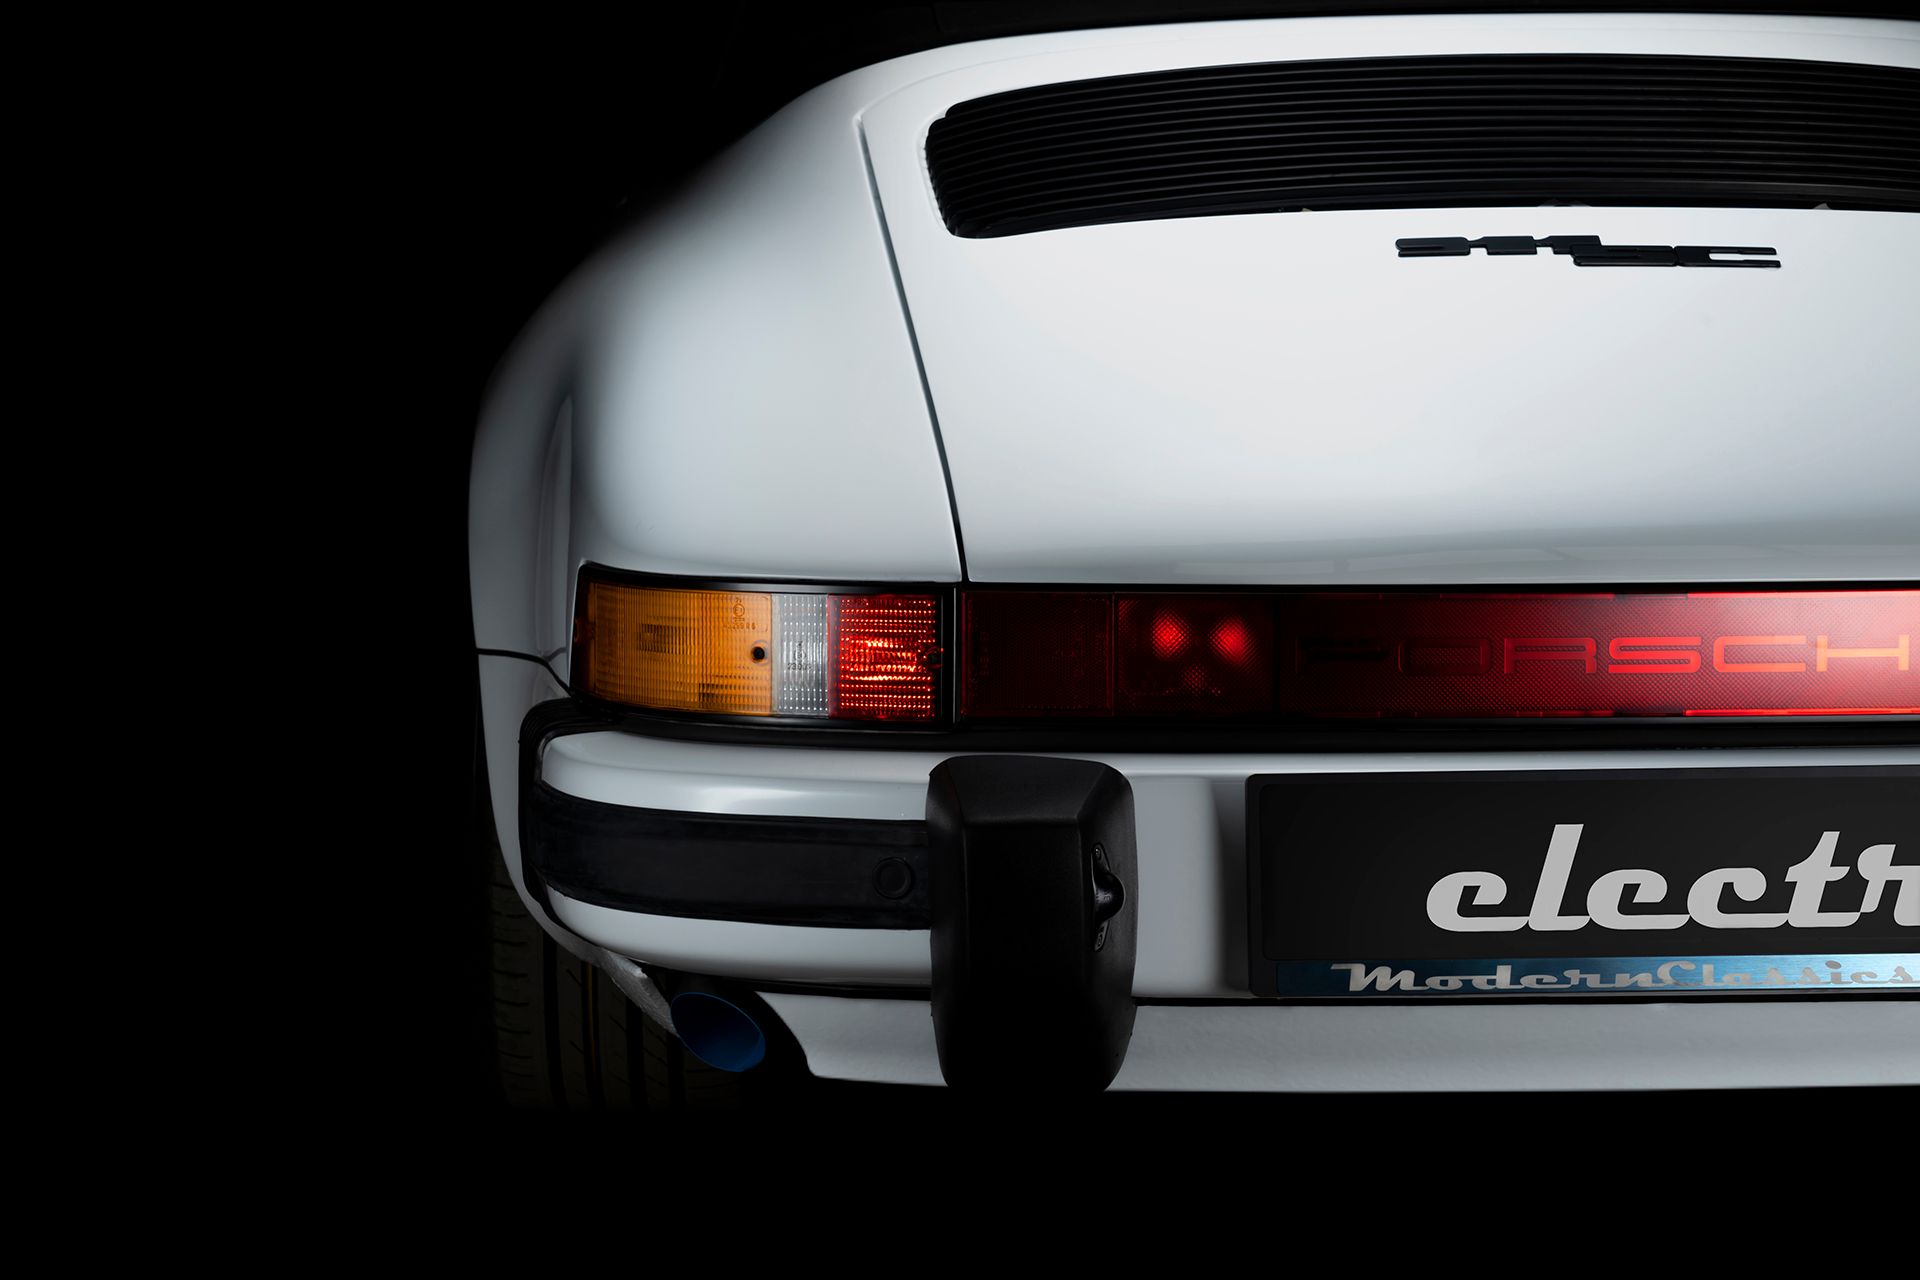 2022 Porsche 911 Super Carrera Electric By Modern Classics